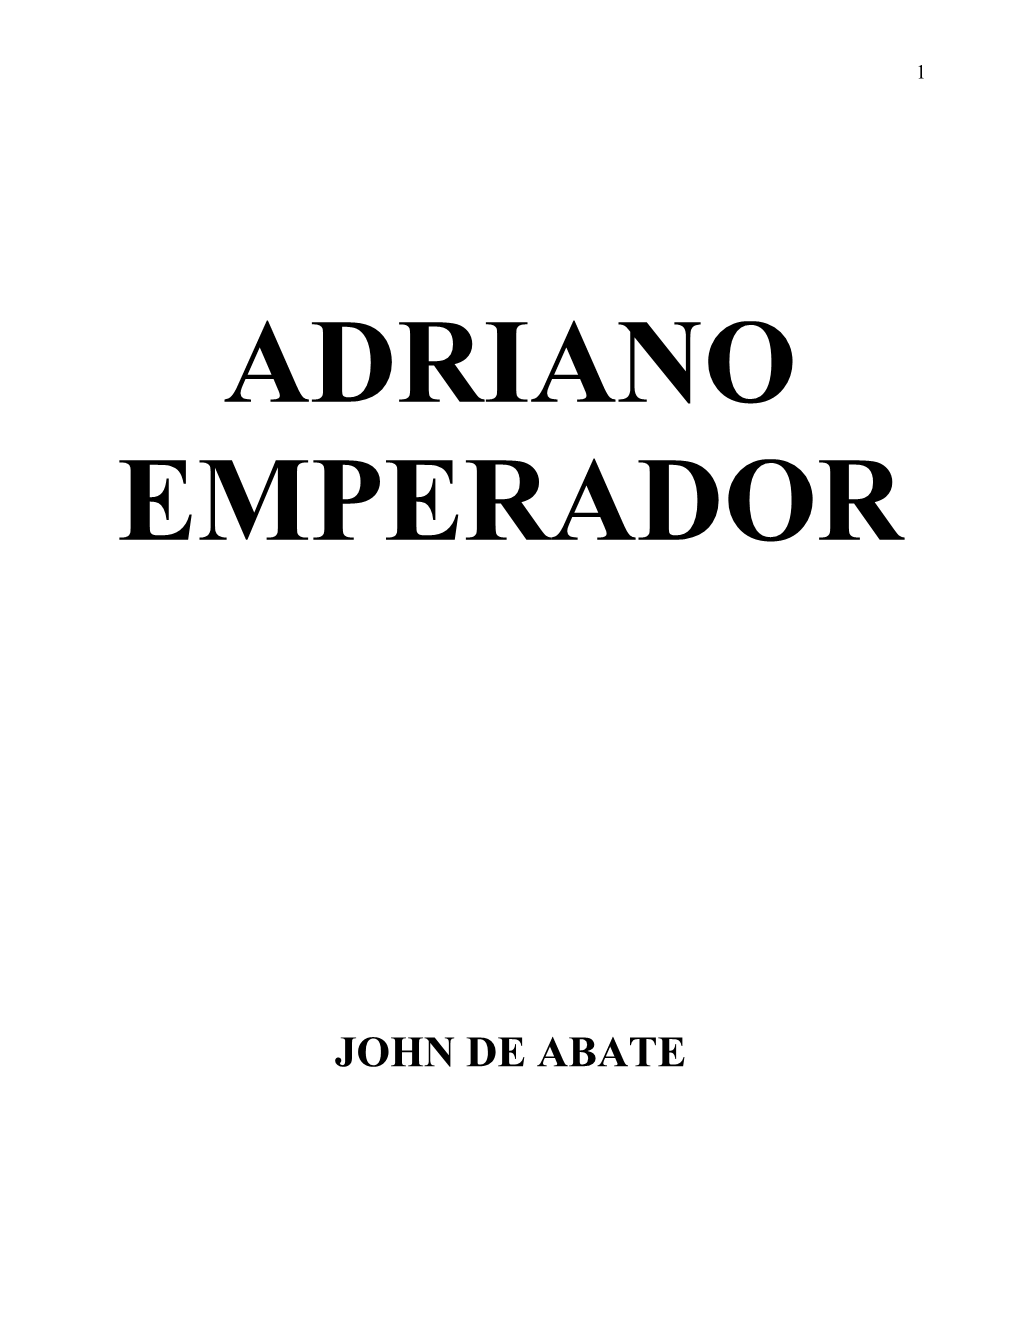 Adriano Emperador